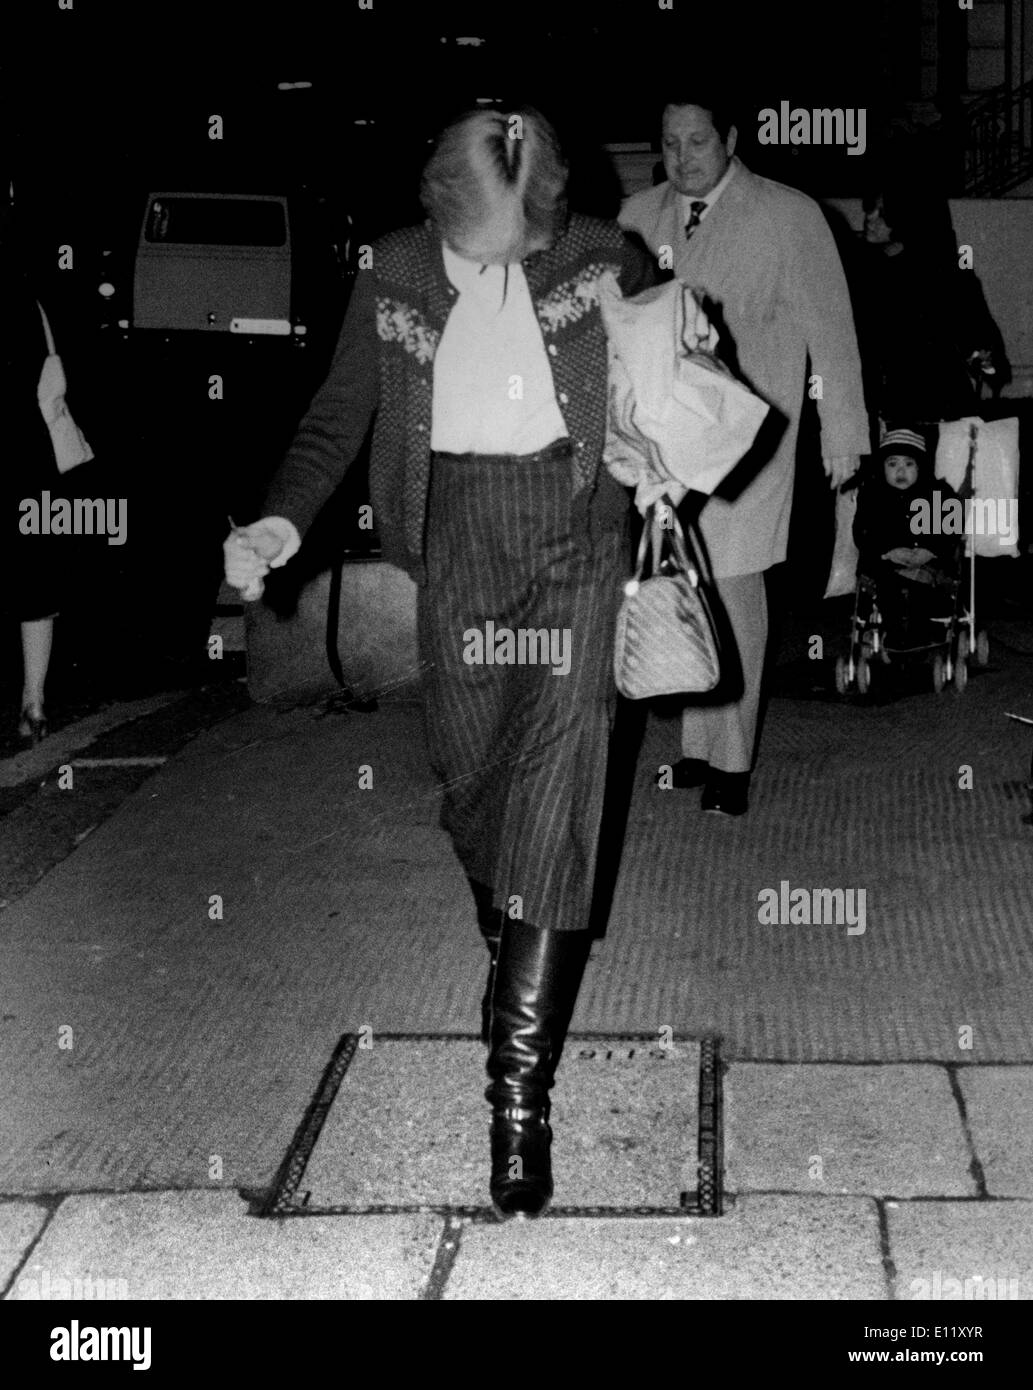 Nov 13, 1980; Londra, Inghilterra, Regno Unito; Diana Spencer,19 più tardi noto come la Principessa Diana che ha sposato il Principe Carlo del Galles è timido a Foto Stock